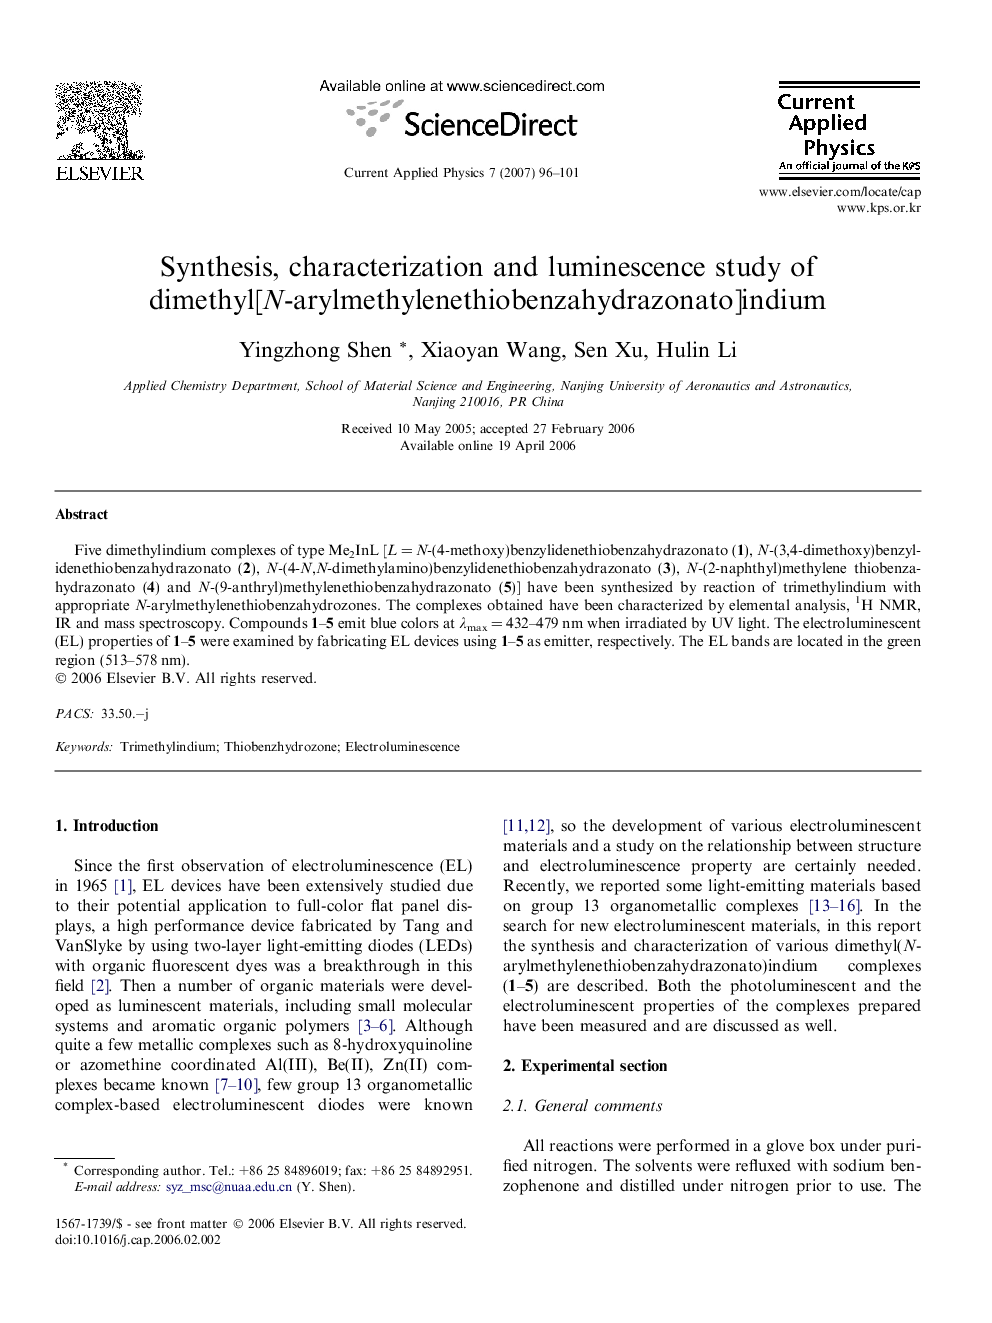 Synthesis, characterization and luminescence study of dimethyl[N-arylmethylenethiobenzahydrazonato]indium